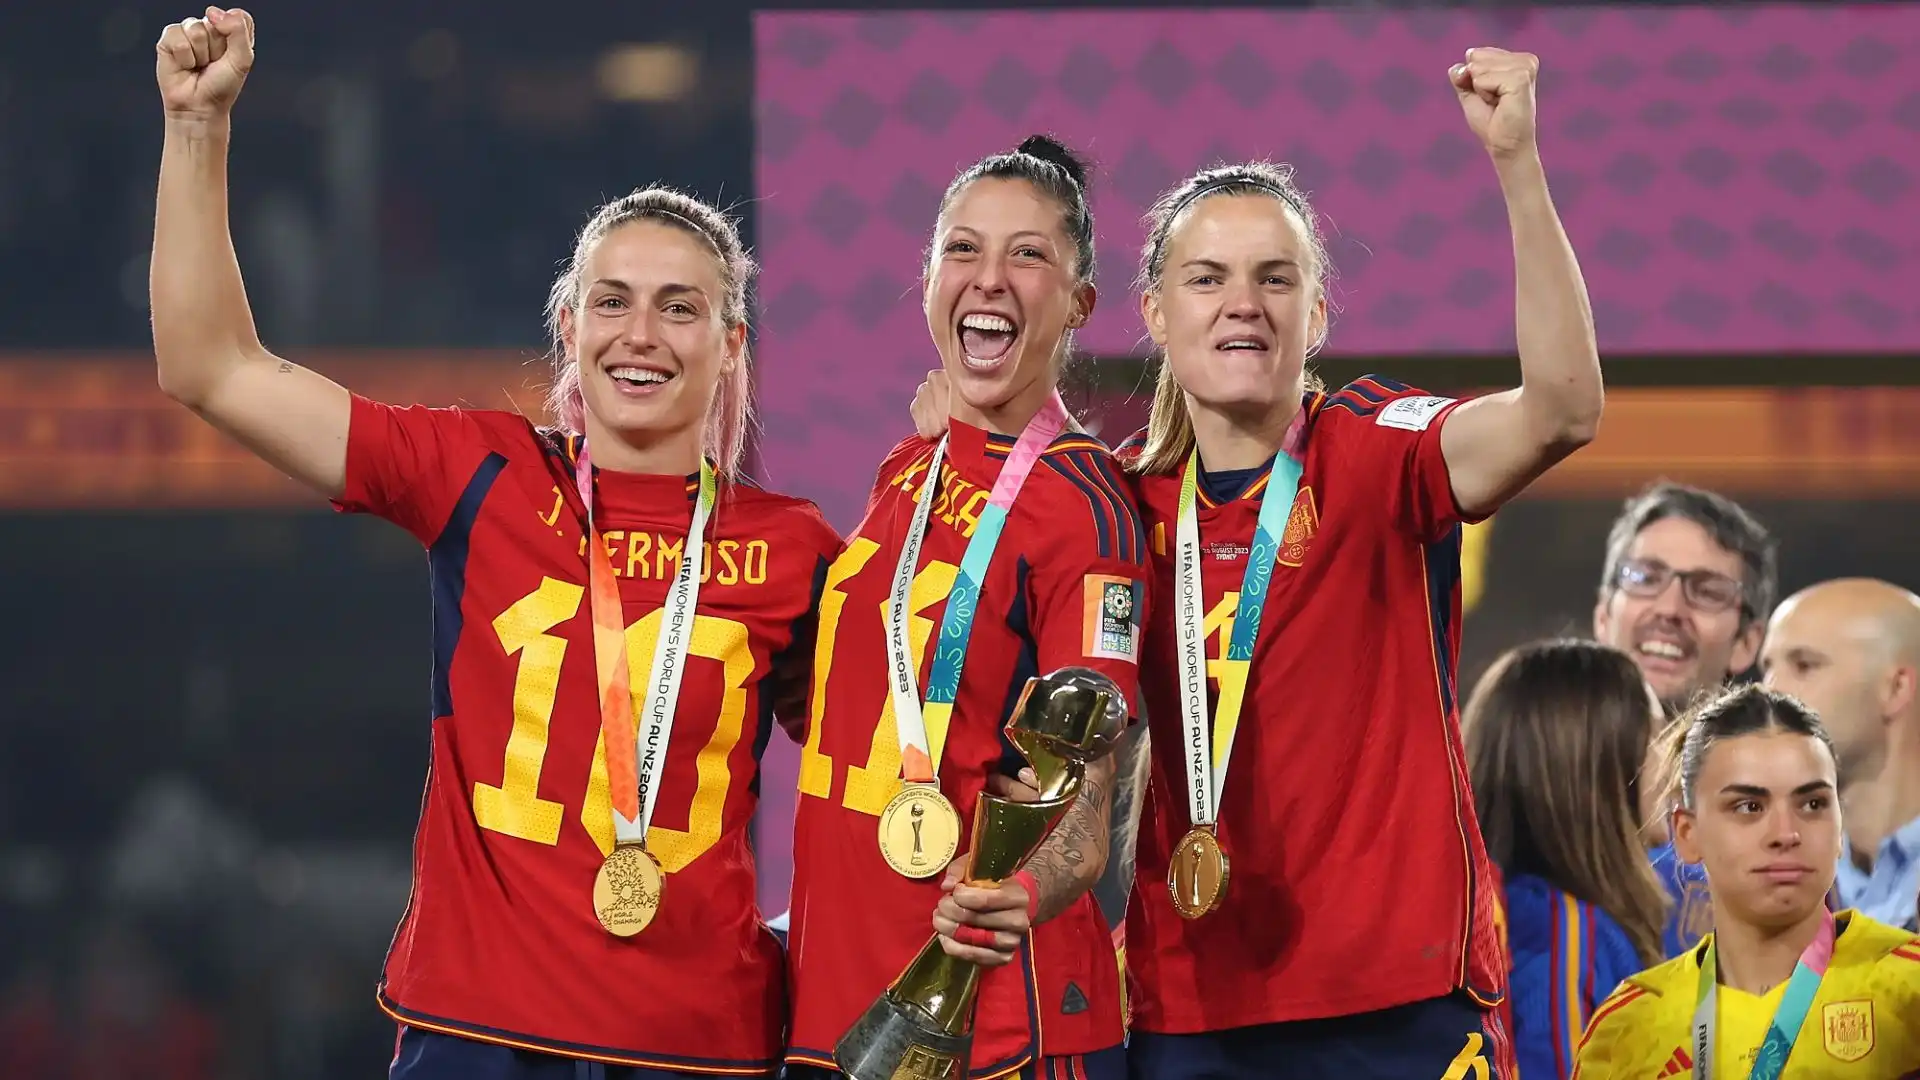 Festa sfrenata per la Spagna dopo la conquista del Mondiale di calcio femminile